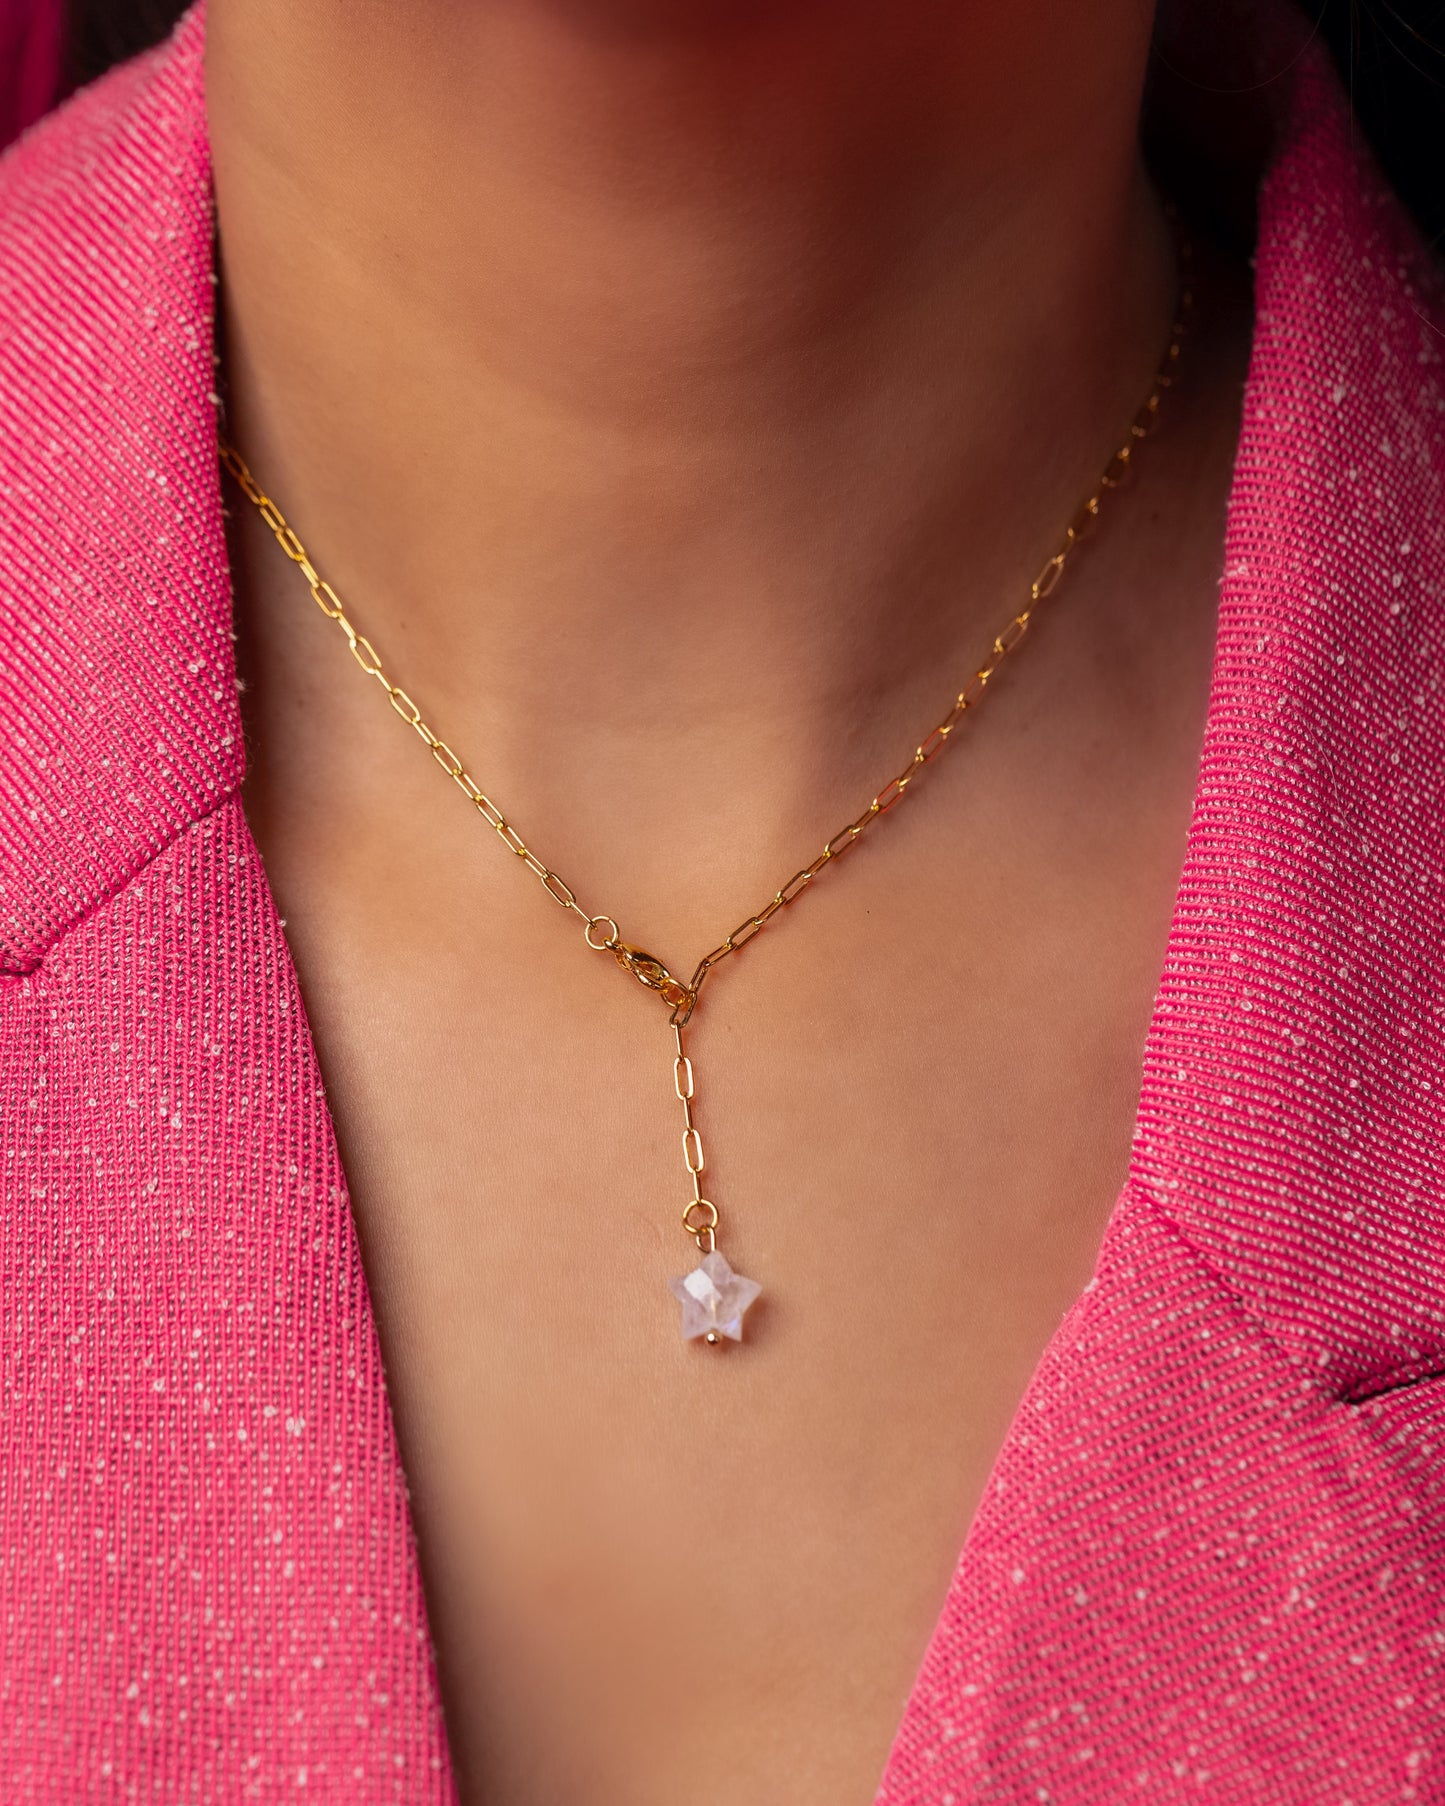 Lorelai Star lariat necklace